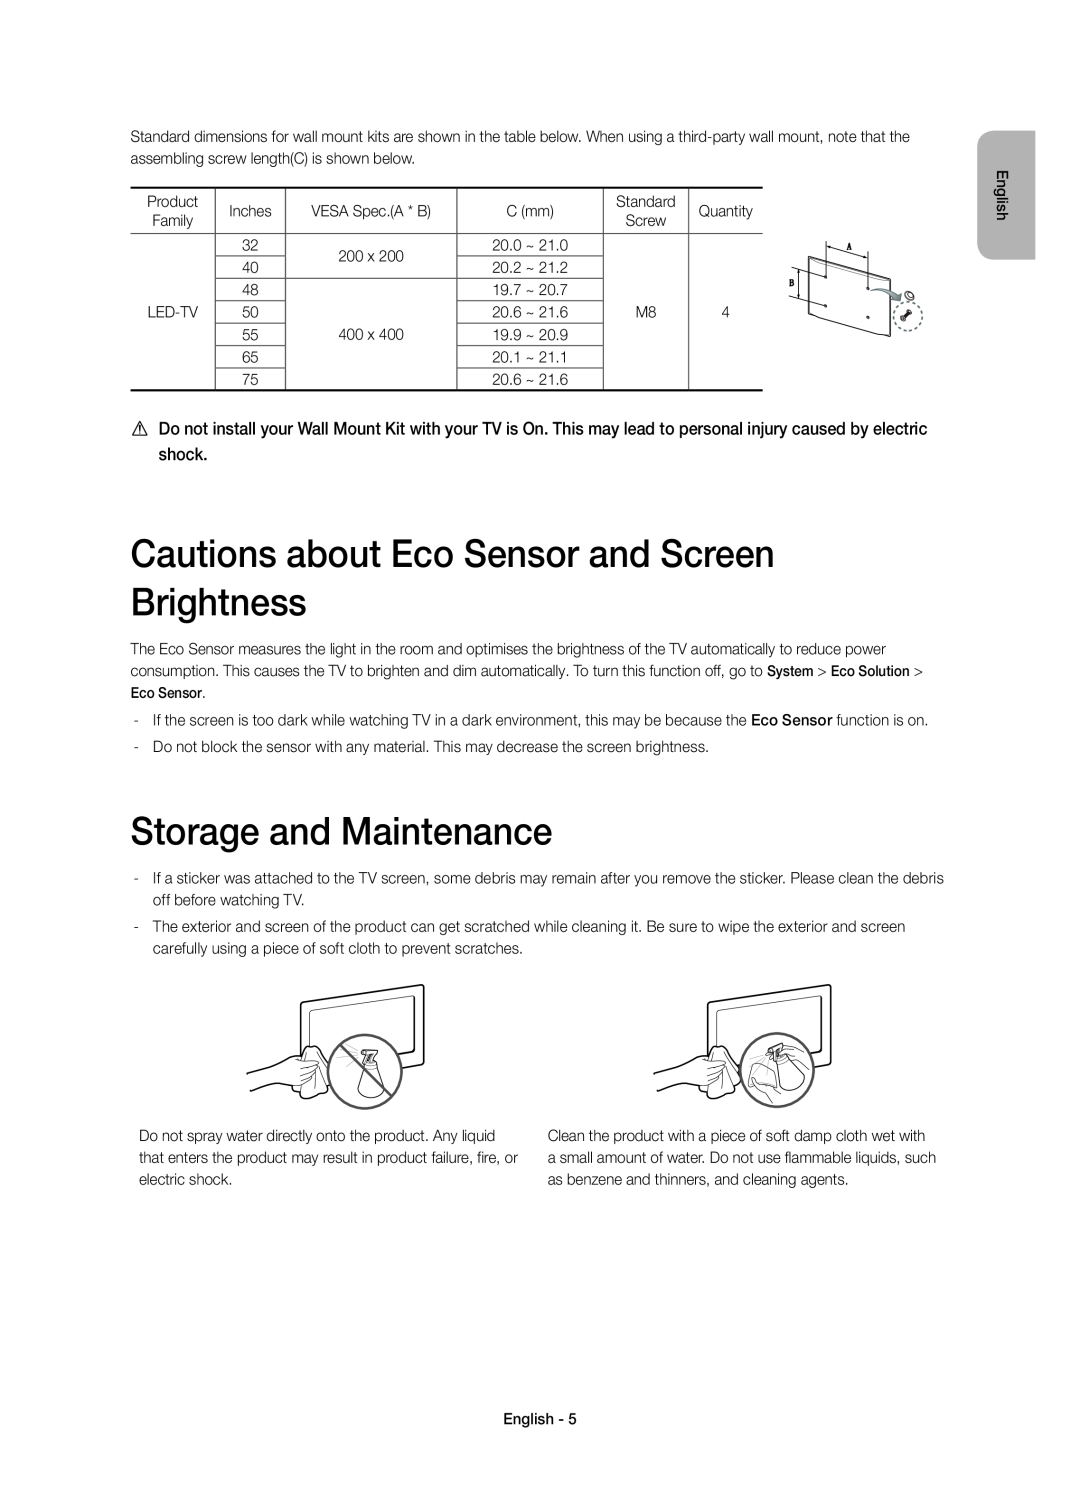 Samsung UE75H6400AWXXC, UE48H6400AWXXH Cautions about Eco Sensor and Screen Brightness, Storage and Maintenance, Screw 